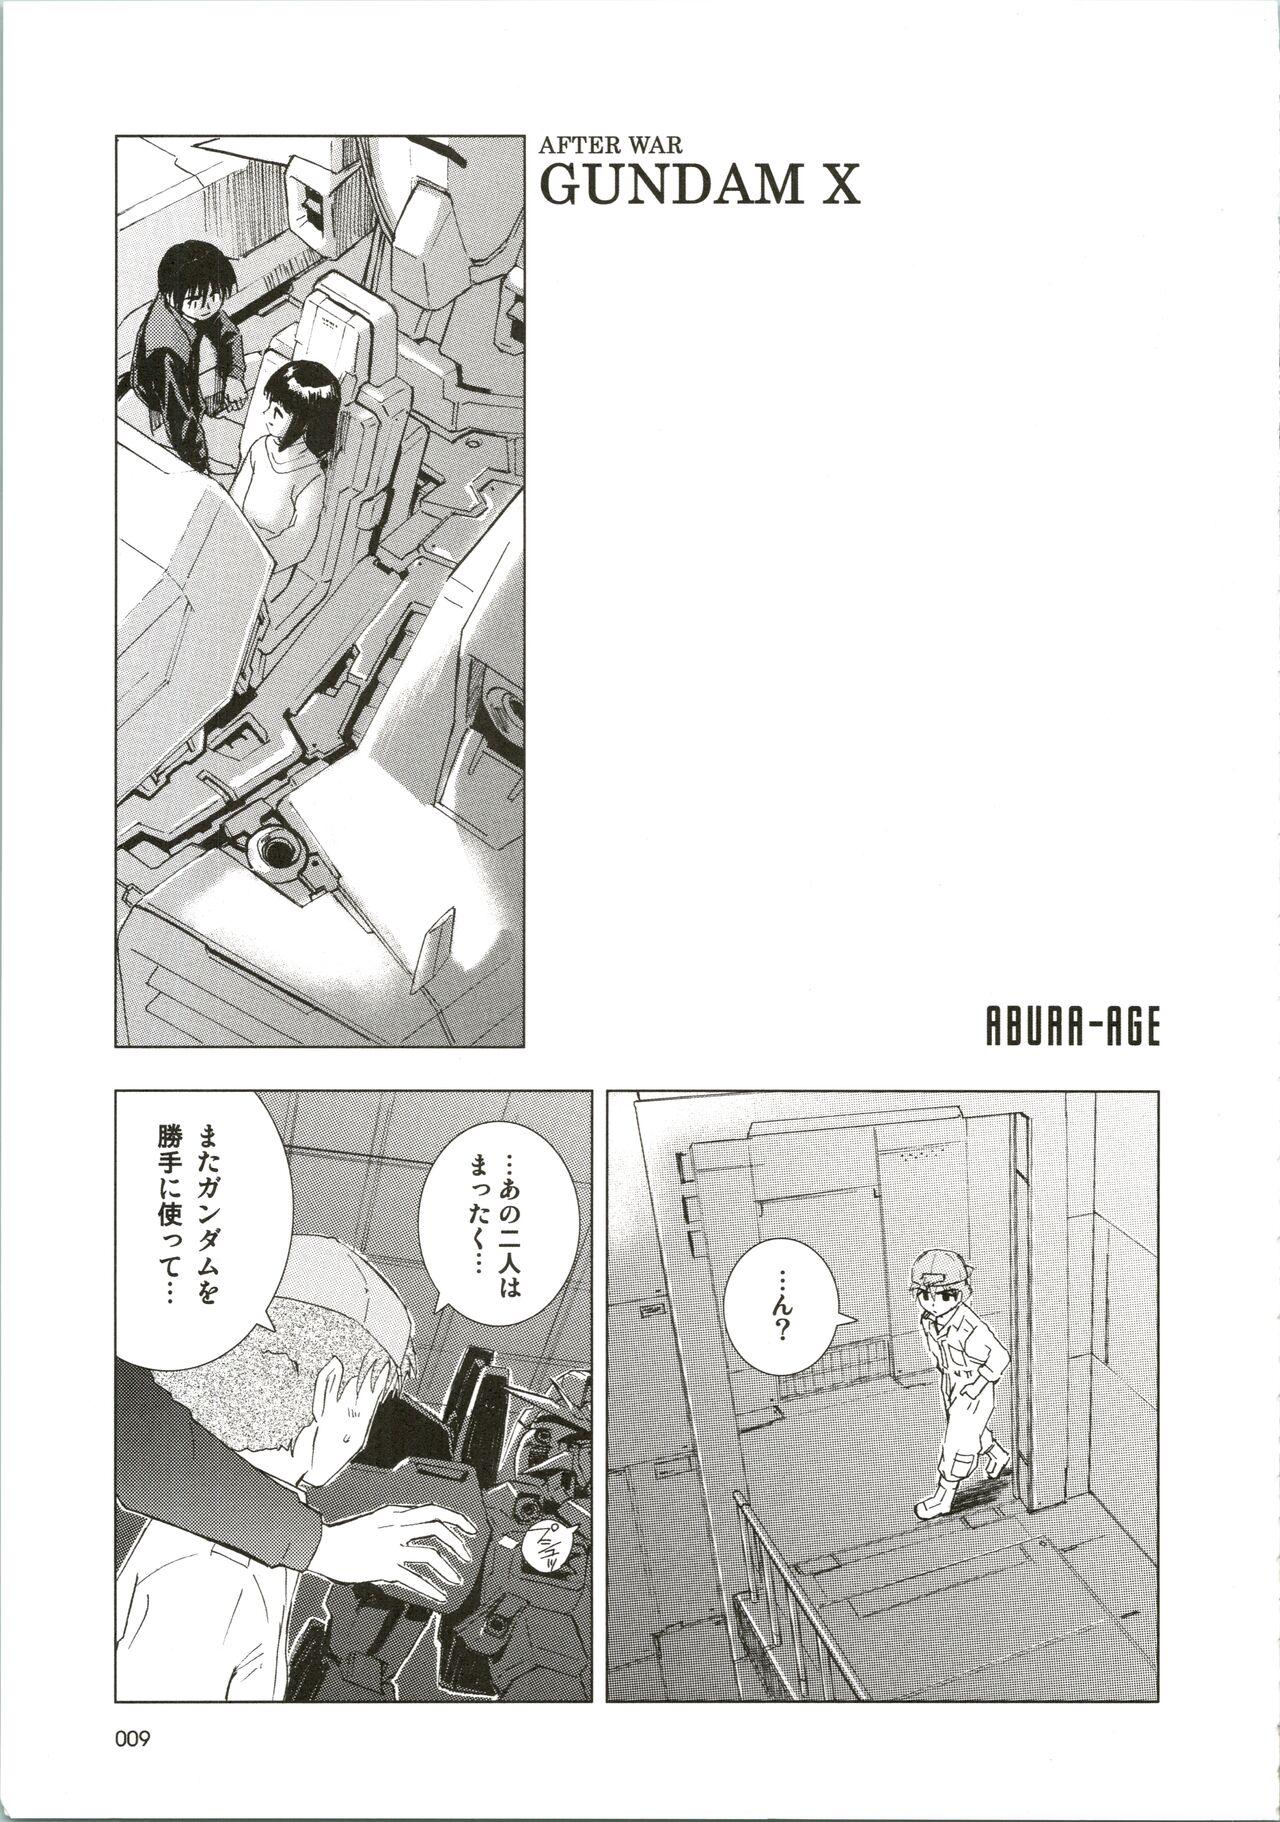 Boss [WINDFALL (Aburaage)] 303e Vol. 07 (Gundam X, R.O.D the TV) ZHOA8229 - Read or die Gundam x Rough Porn - Page 9